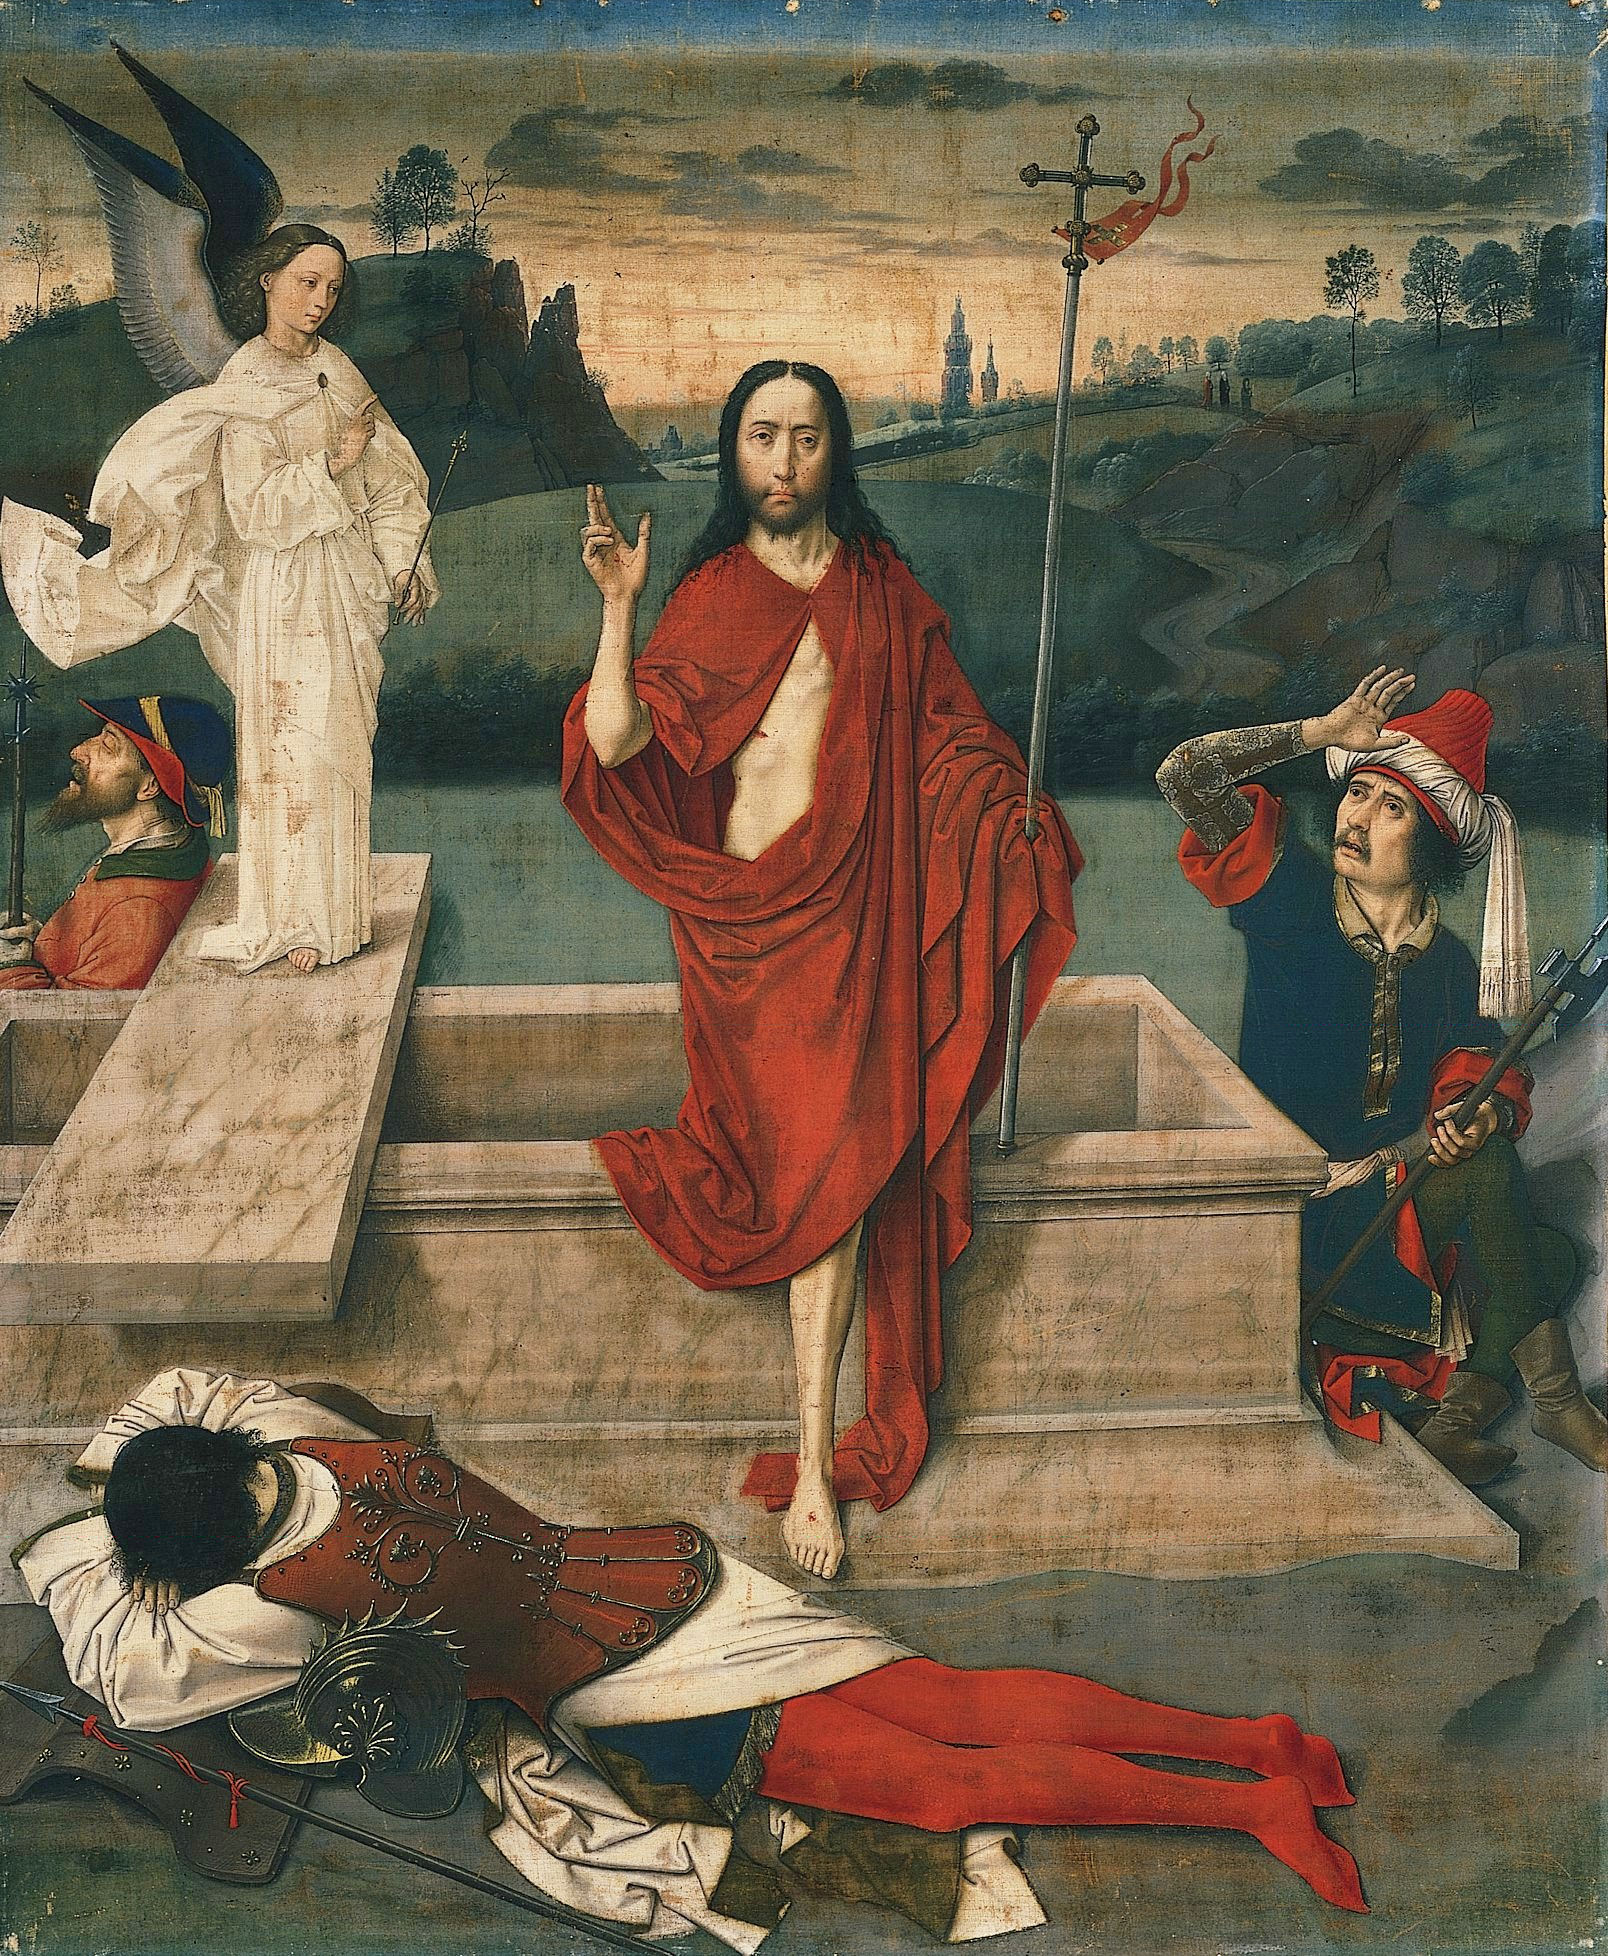 Resurrection by Dieric Bouts - c. 1455 - 89.9 x 74.3 cm Norton Simon Museum